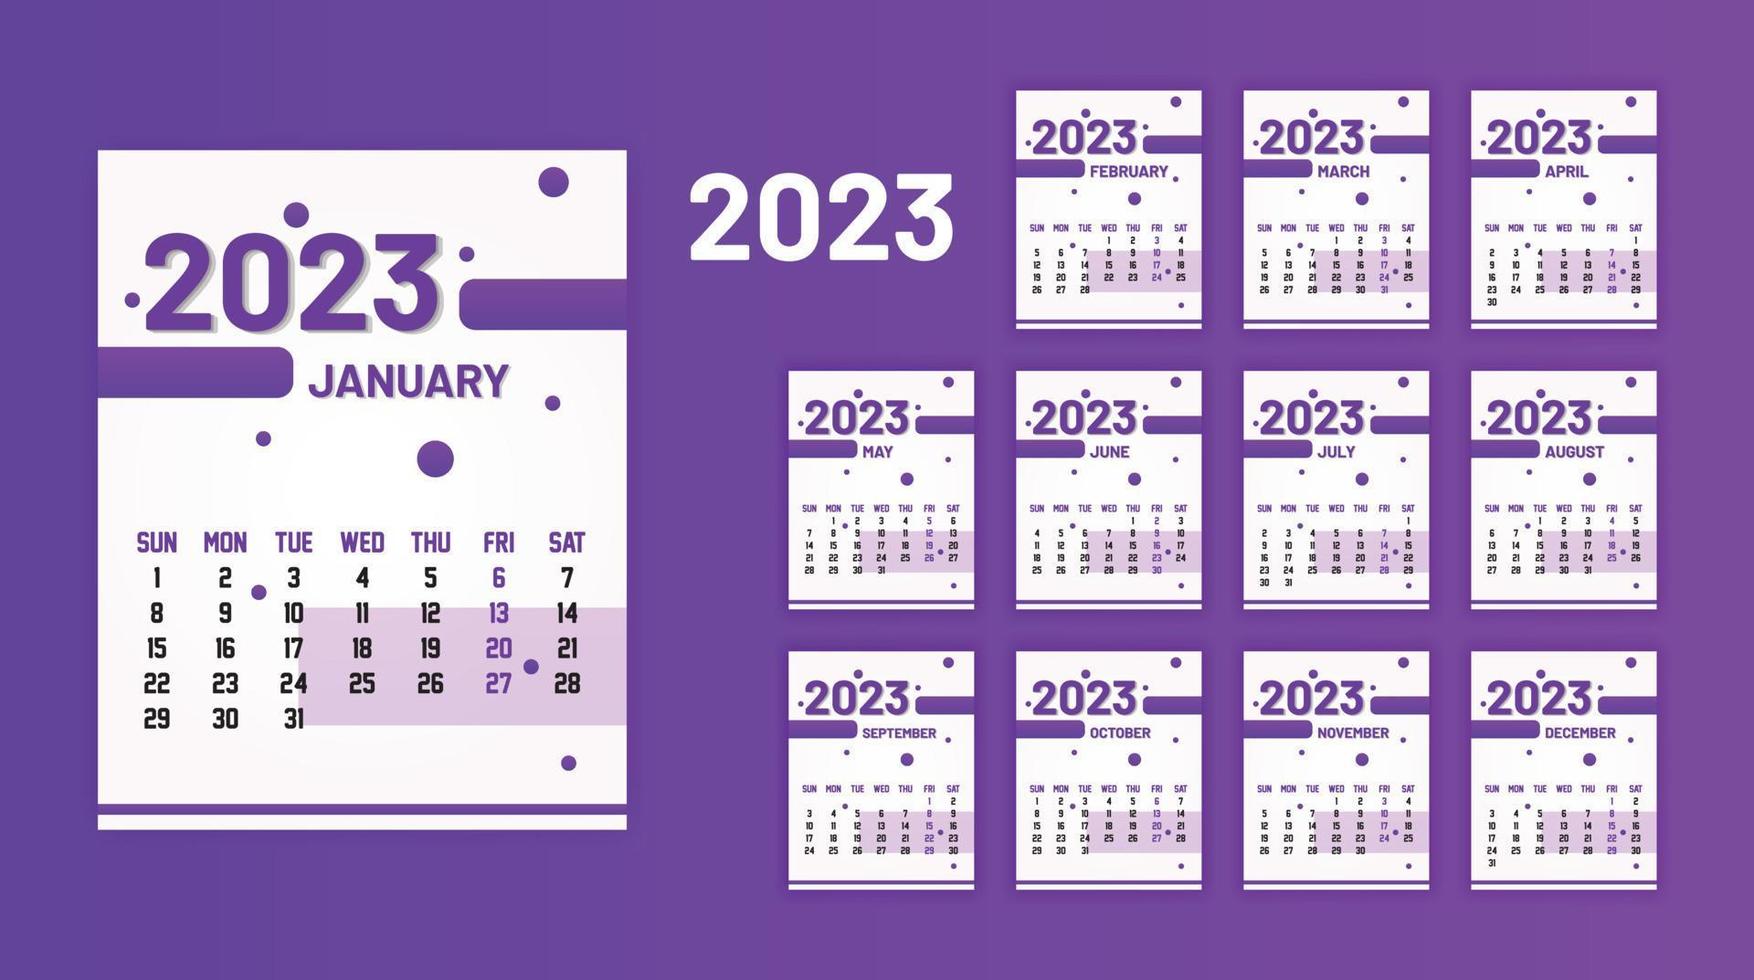 årlig kalender 2023 skriva ut redo eps vektor mall, 12 månader kalender.